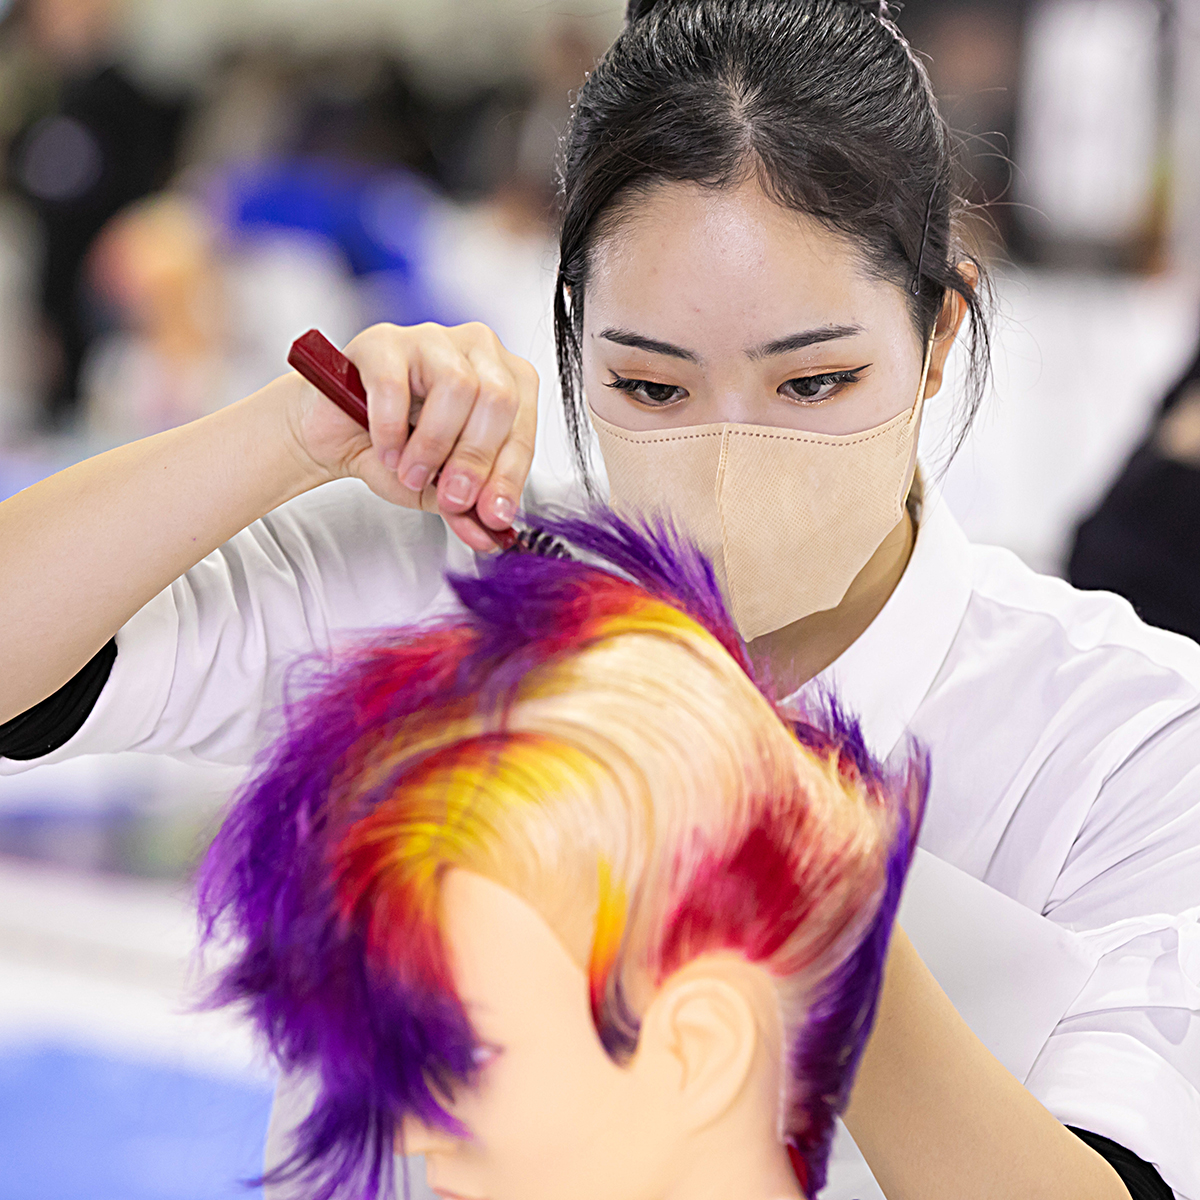 技能五輪全国大会「美容」職種！ ポイント② ヘアスタイルを完成させるためにはたくさんの技術が必要ですが、それ以上にお客様に心からご満足していただくことが大切な仕事 #WorldSkills #WorldSkillsJapan #技能五輪全国大会 #NationalSkills #美容 #Hairdressing